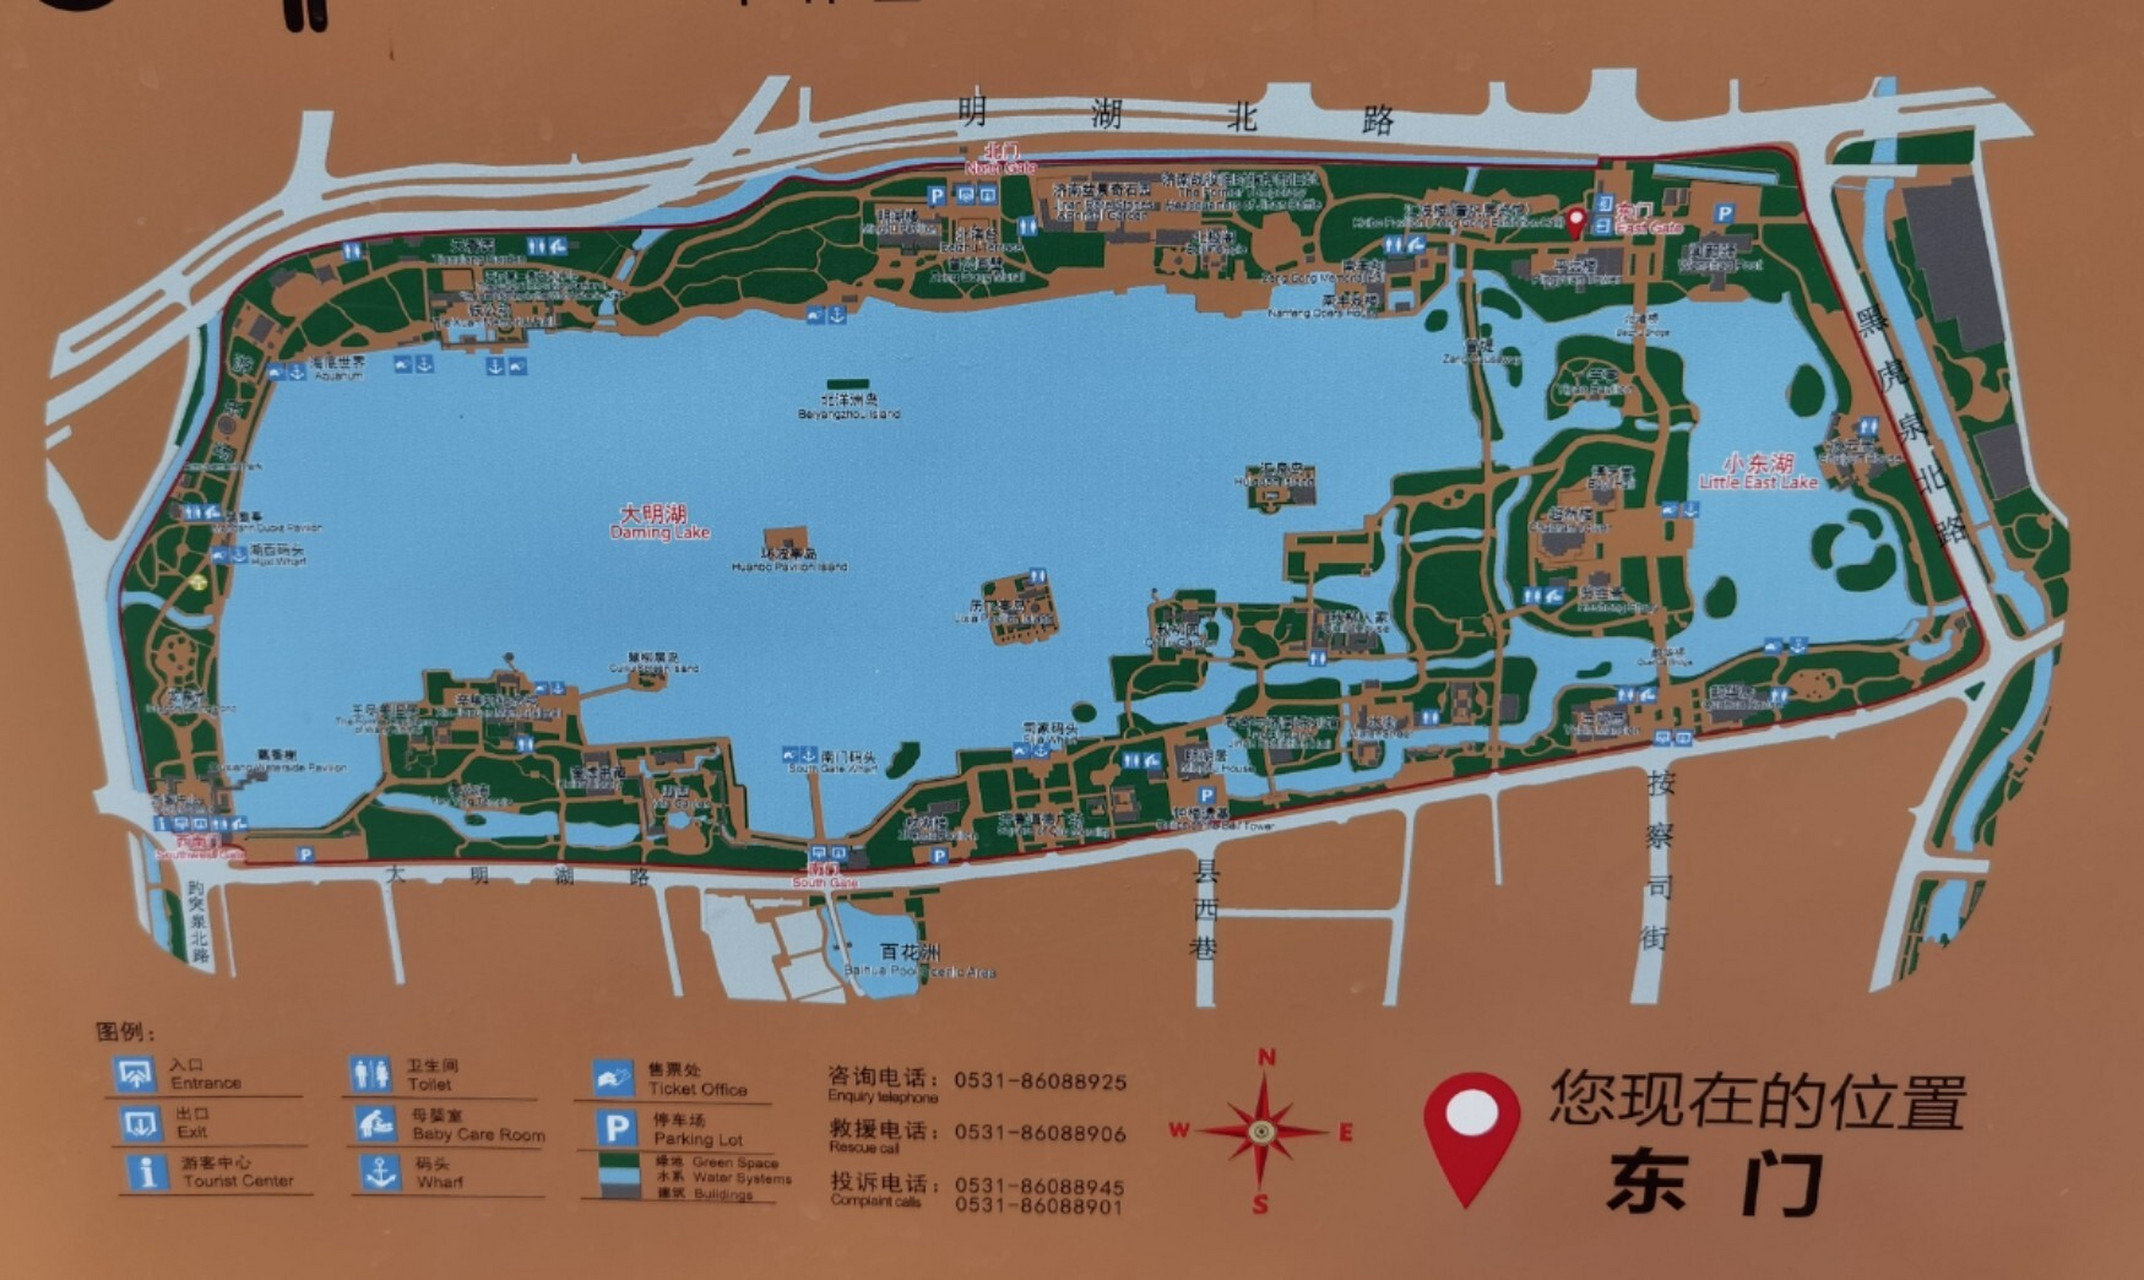 大明湖公园游览路线图图片